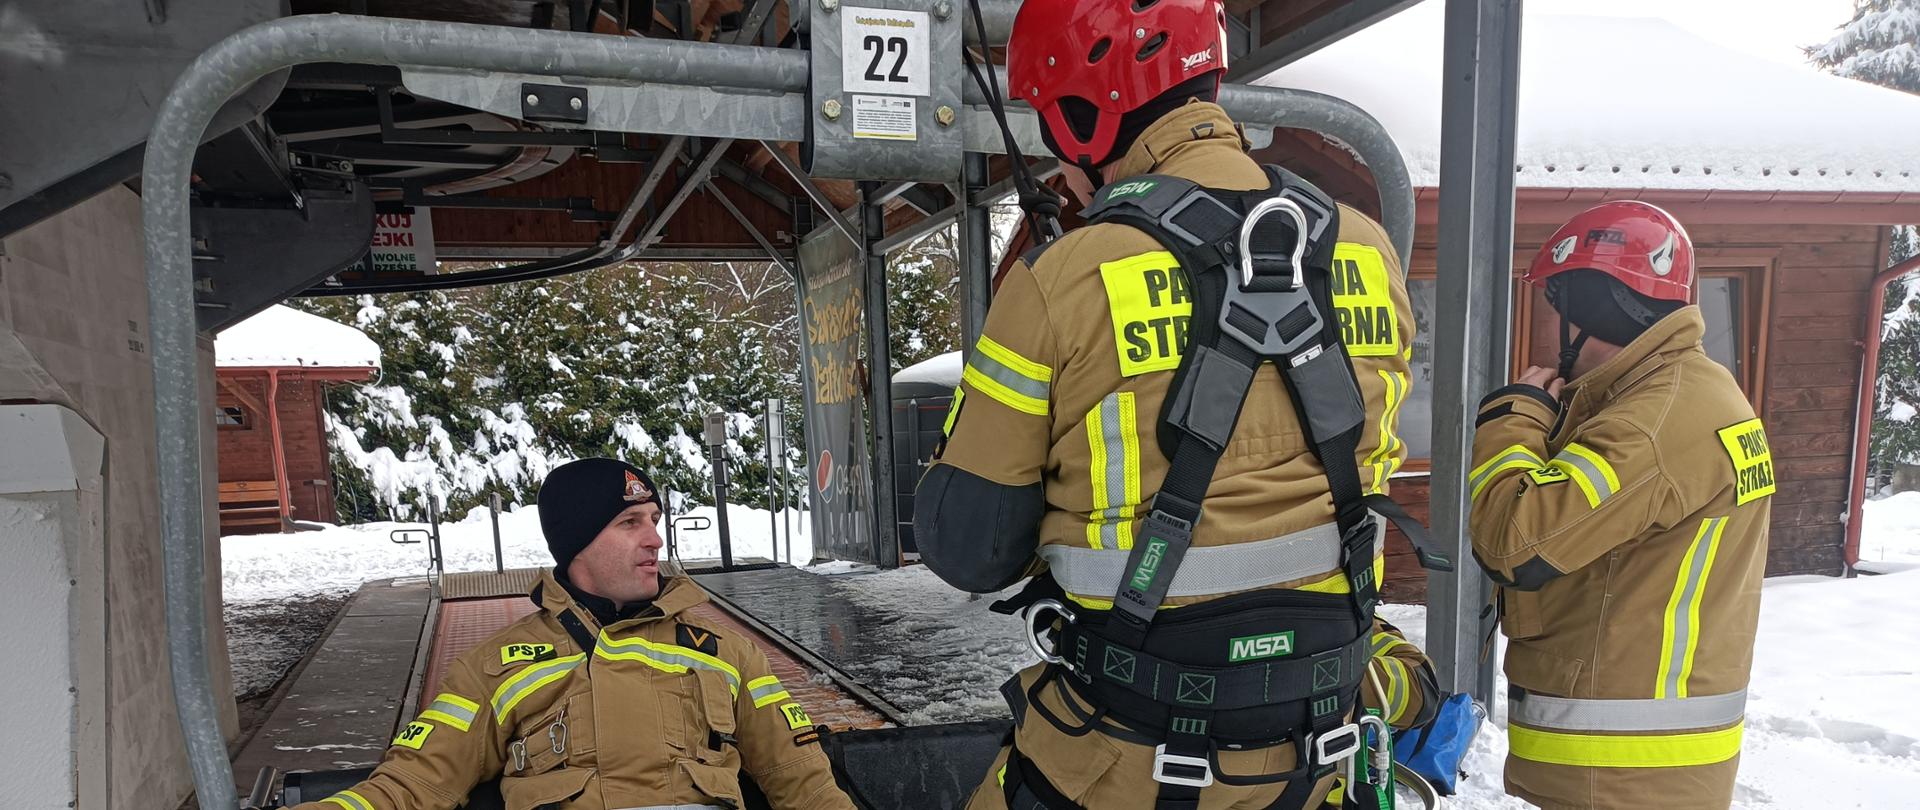 Na zdjęciu na pierwszym planie widać czterech strażaków. Dwóch z nich siedzi na wyciągu krzesełkowym przy stacji narciarskiej - jako poszkodowani (pozoranci). Trzeci ratownik ubrany w sprzęt do wysokościówki zwisa nad poszkodowanym. Czwarty ubiera kask zabezpieczający. Zdjęcie wykonane w scenerii śnieżnej przy stacji narciarskiej w Bałtowie.